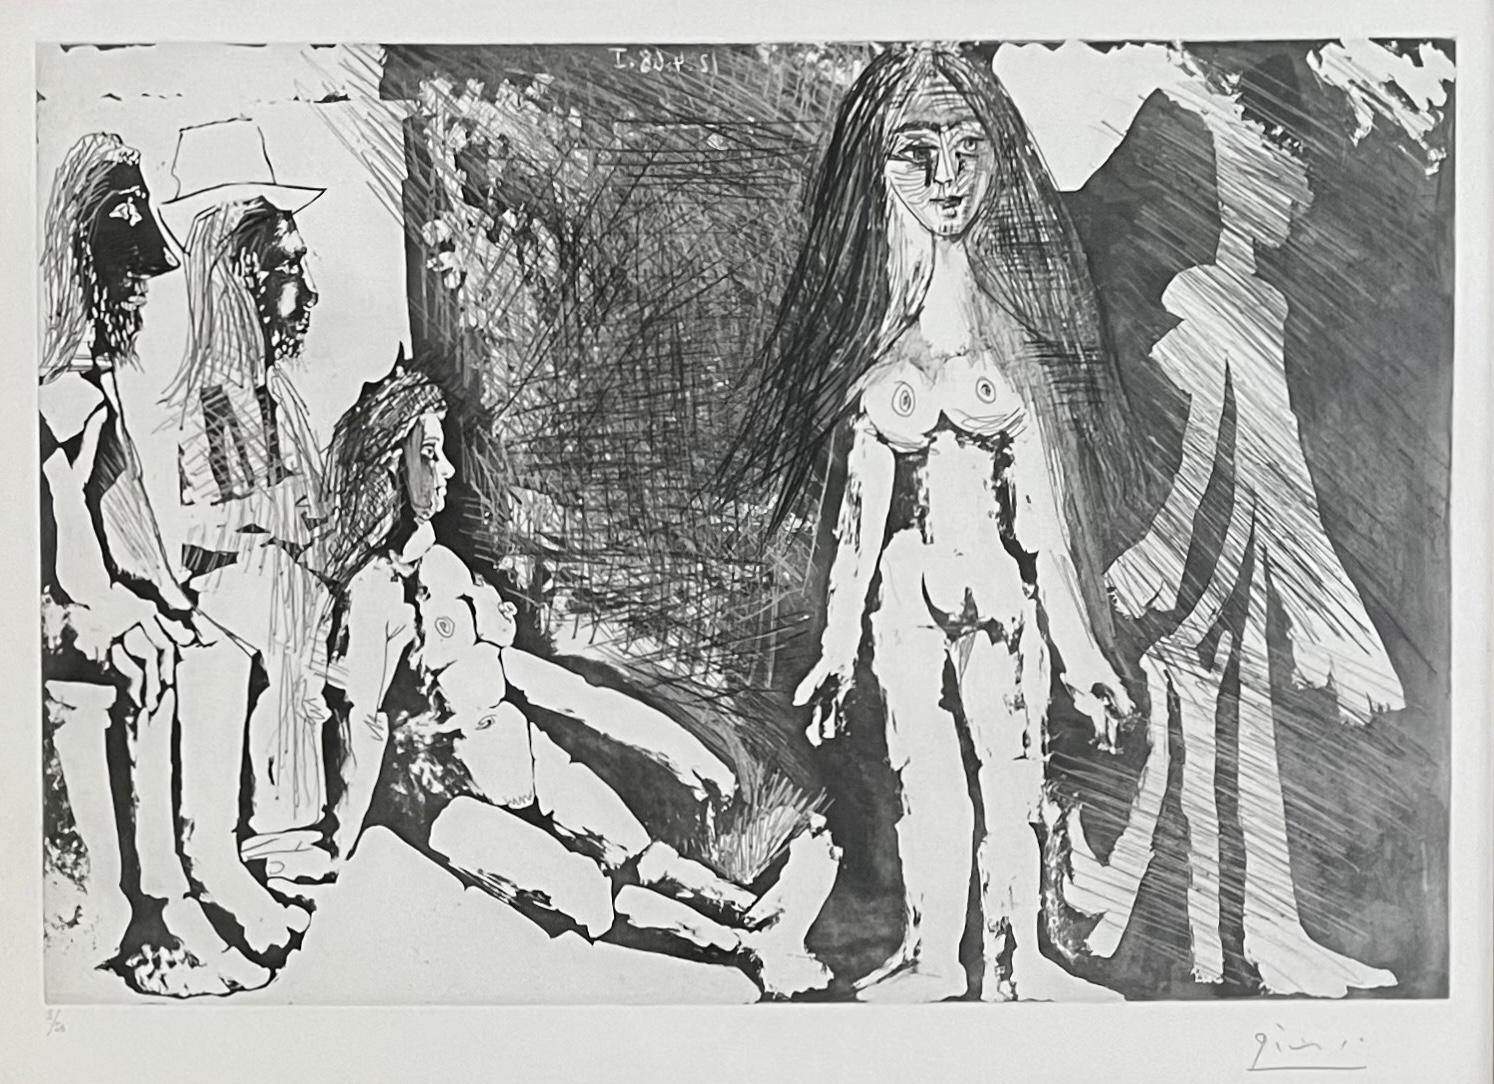 Artiste : Pablo Picasso (1881-1973)
Titre : Jeune fille regardée par une vielle femme et deux hommes dont un gitan
Année : 1968
Médium : Eau-forte, aquatinte et pointe sèche sur papier Rives BFK
Taille : 12.5 x 18.5 (plaque) ; 17.75 x 24.25 pouces